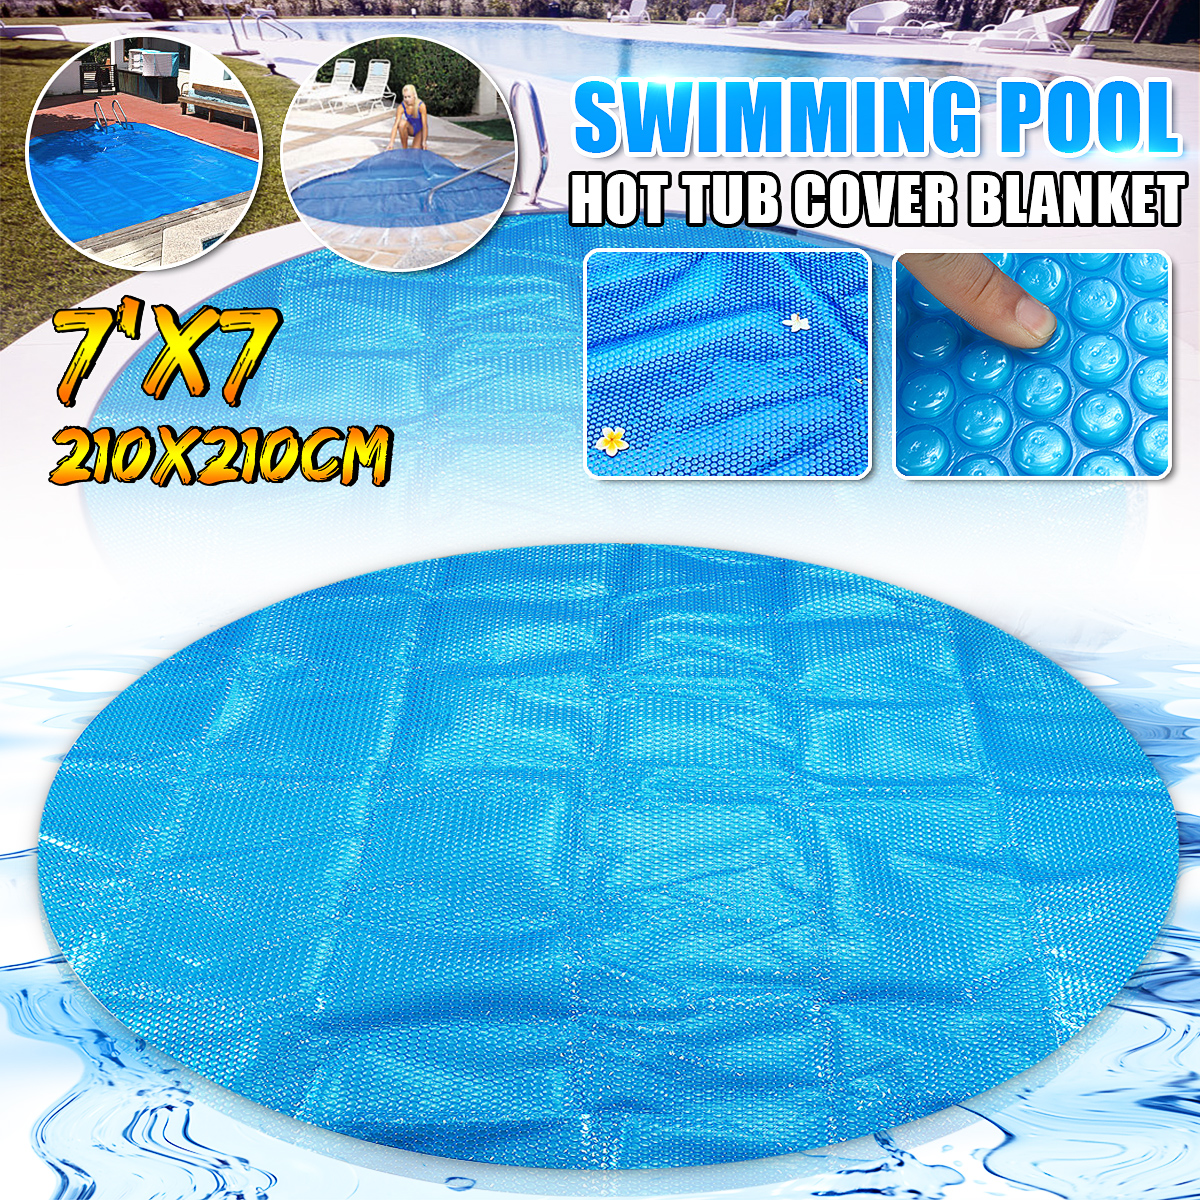 No-Branded Pool Cover Rond//carr/é Piscine Couverture 6 7ft Anti-UV Spa Bain /à remous Couverture Solaire Couverture Thermique Bubble Ground Pool Tissu Color : Bleu, Size : B